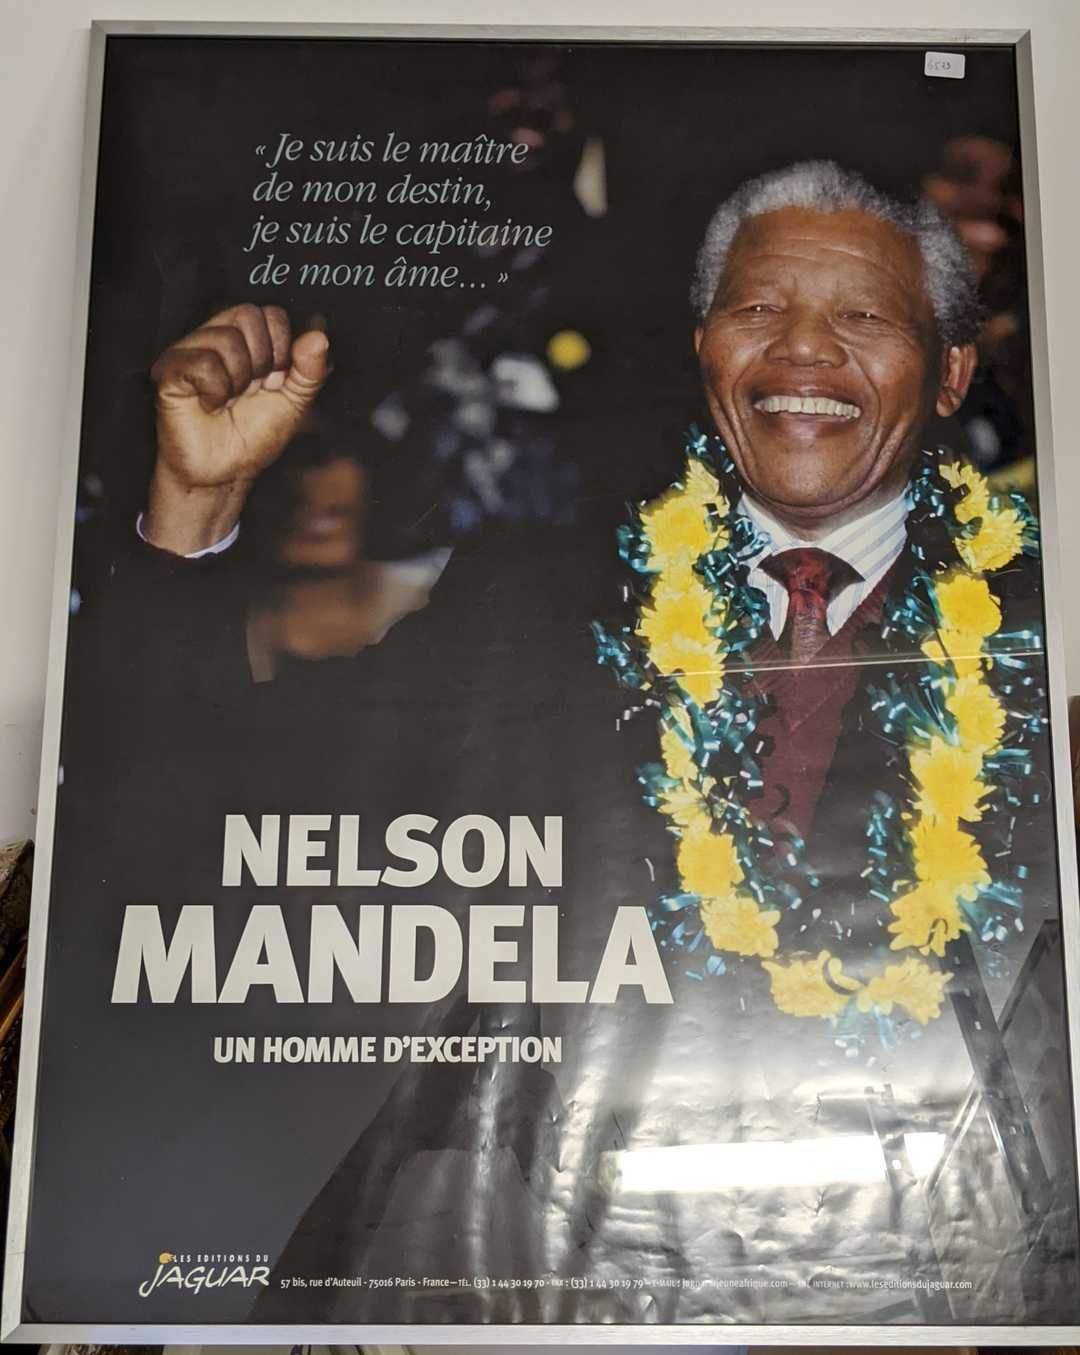 Null Poster raffigurante "Nelson MANDELA un uomo eccezionale".

79 x 59 cm